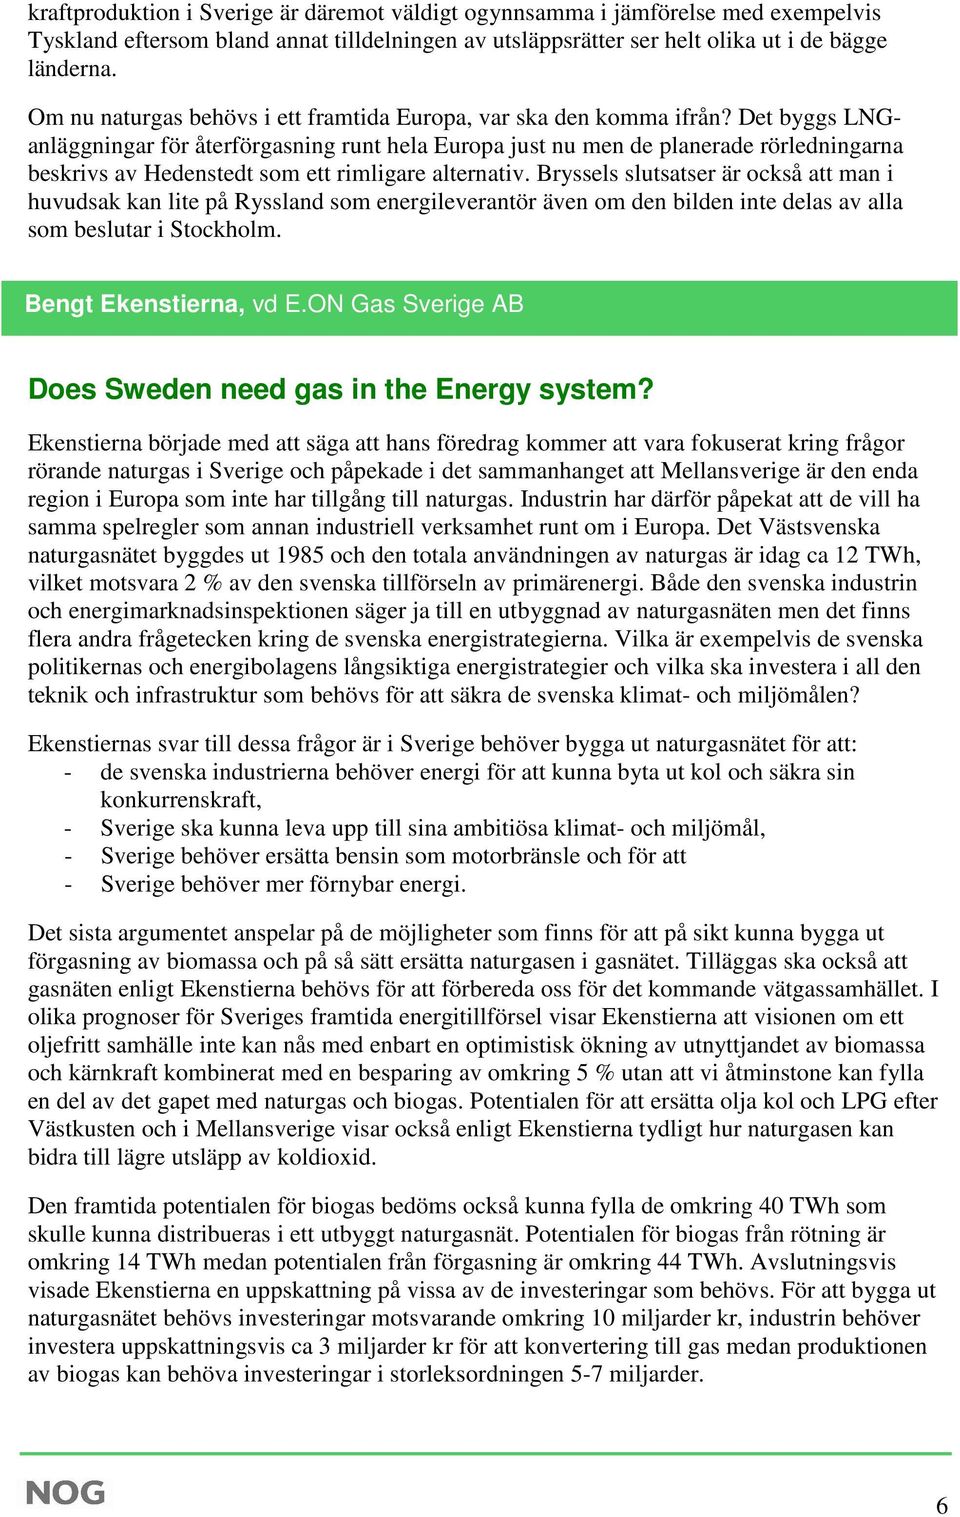 Det byggs LNGanläggningar för återförgasning runt hela Europa just nu men de planerade rörledningarna beskrivs av Hedenstedt som ett rimligare alternativ.